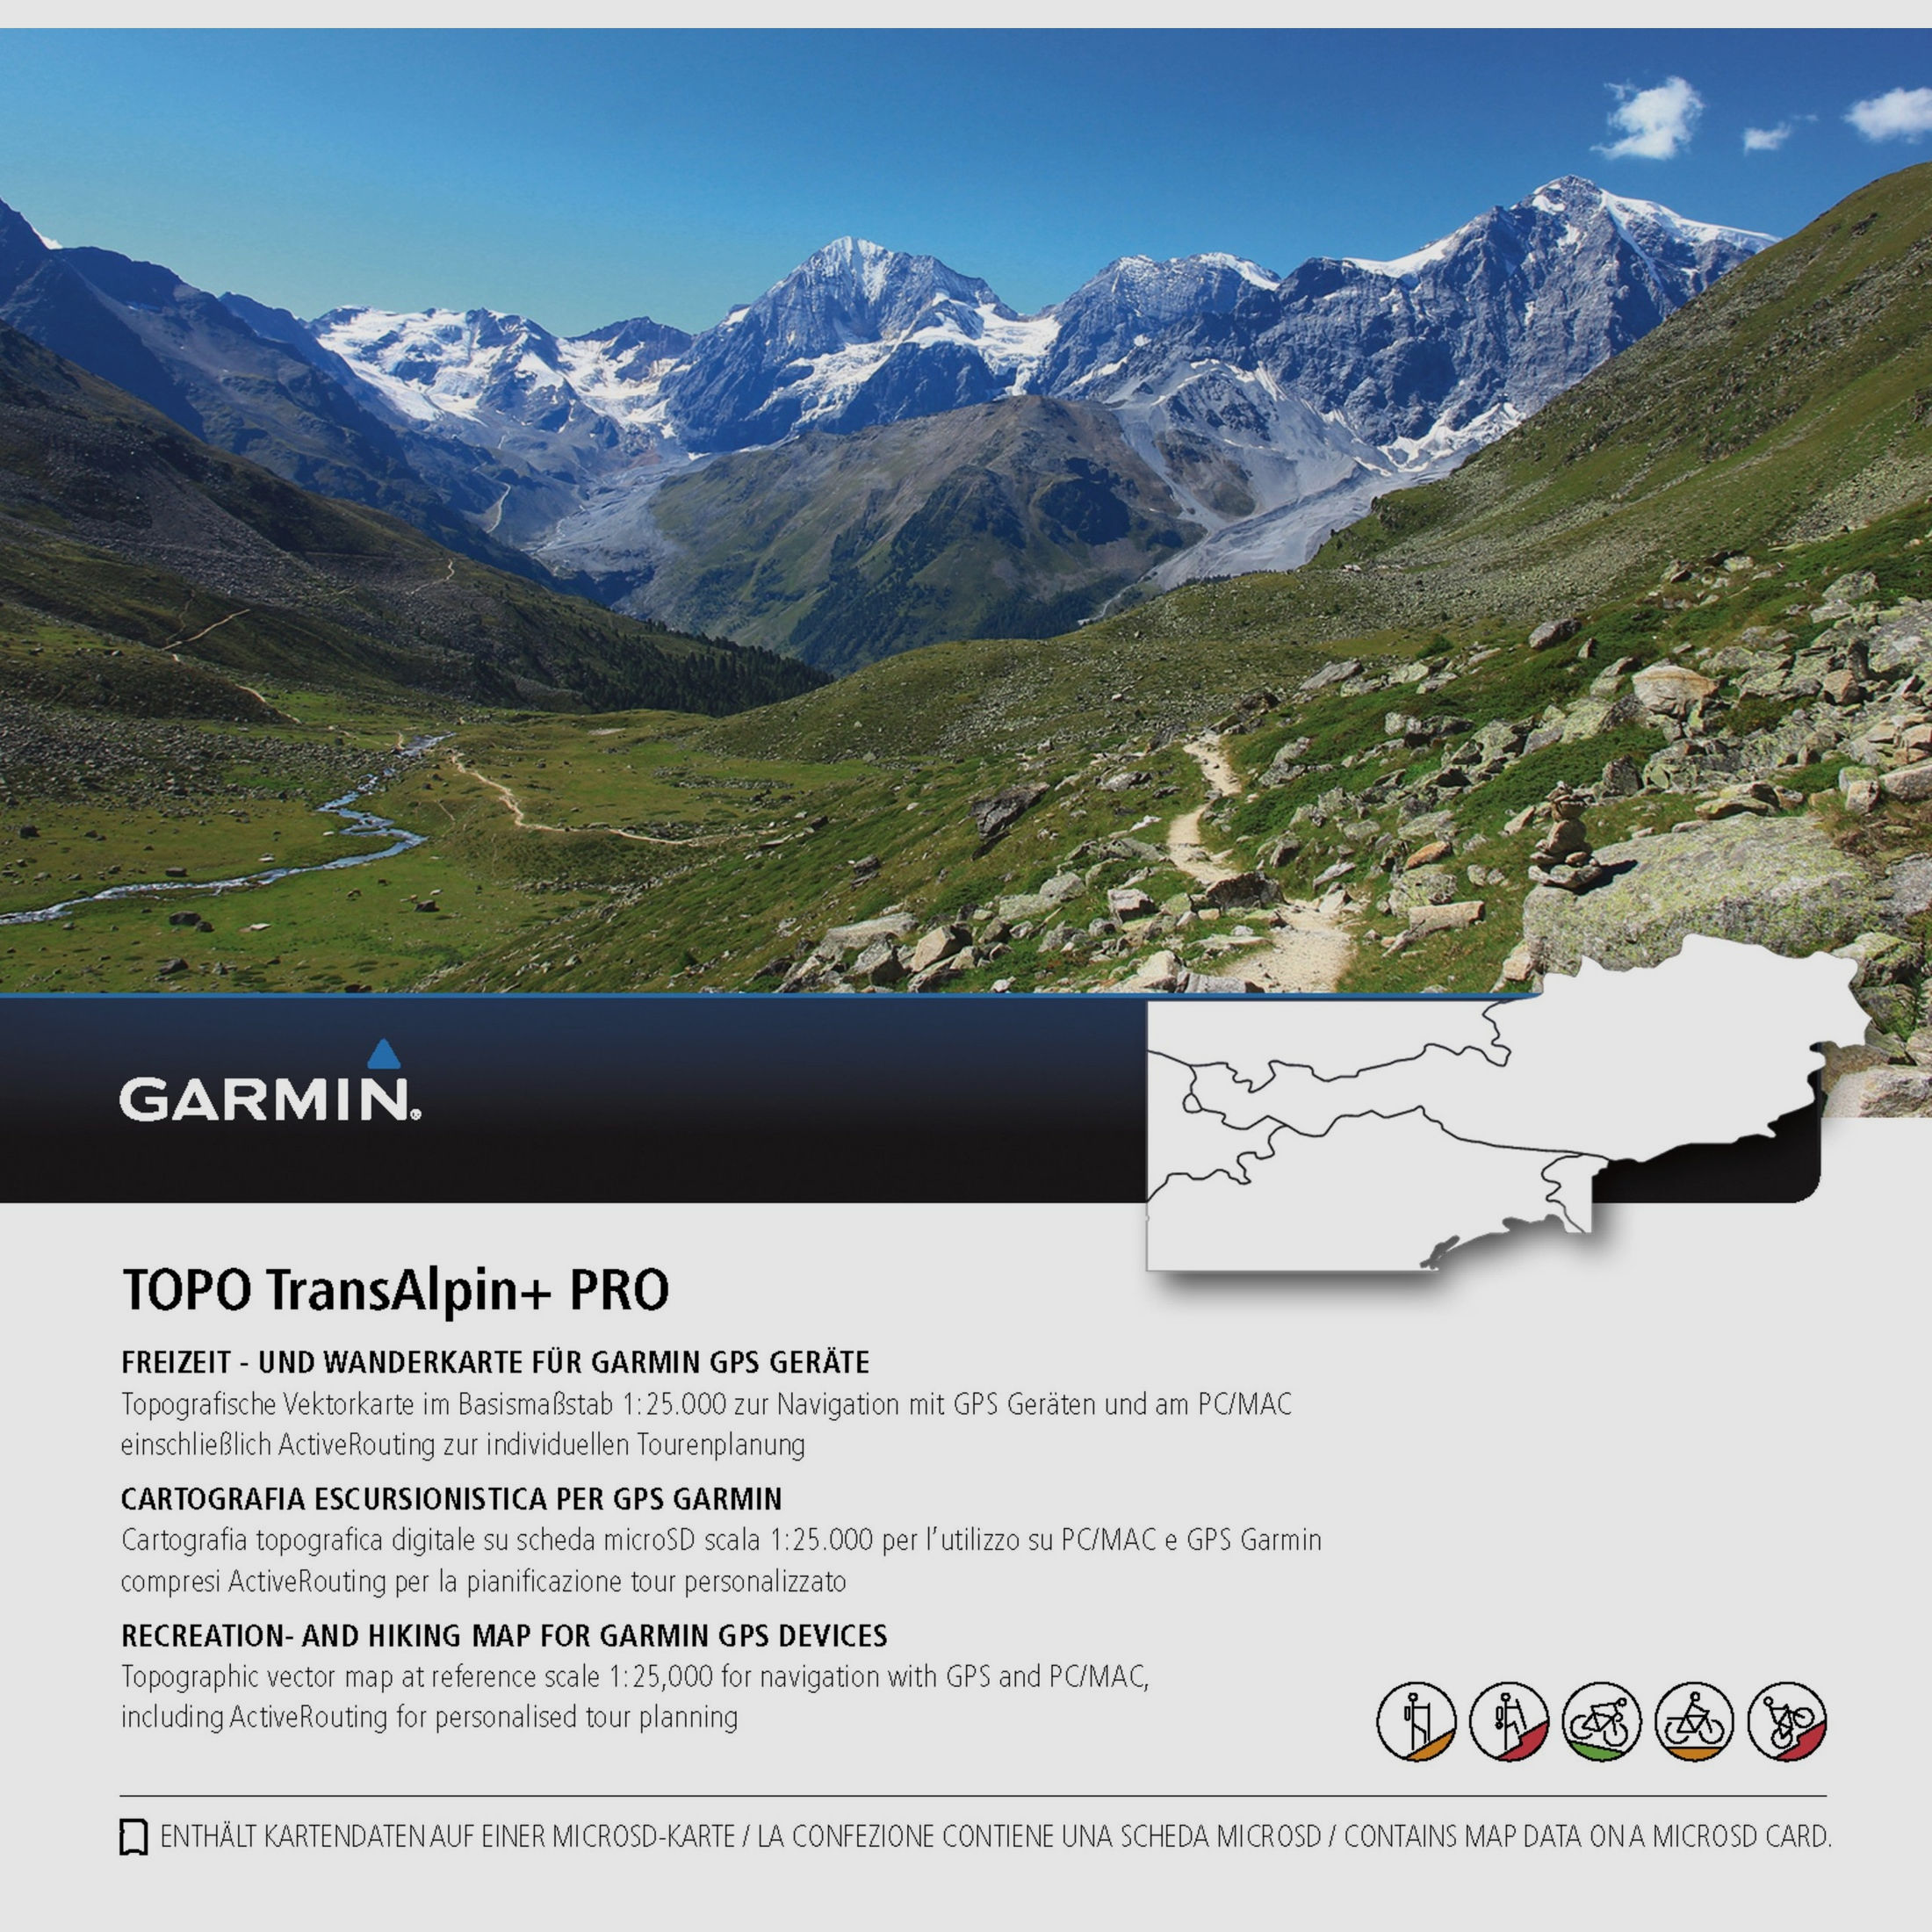 Garmin Topo Transalpin+ Micro SD